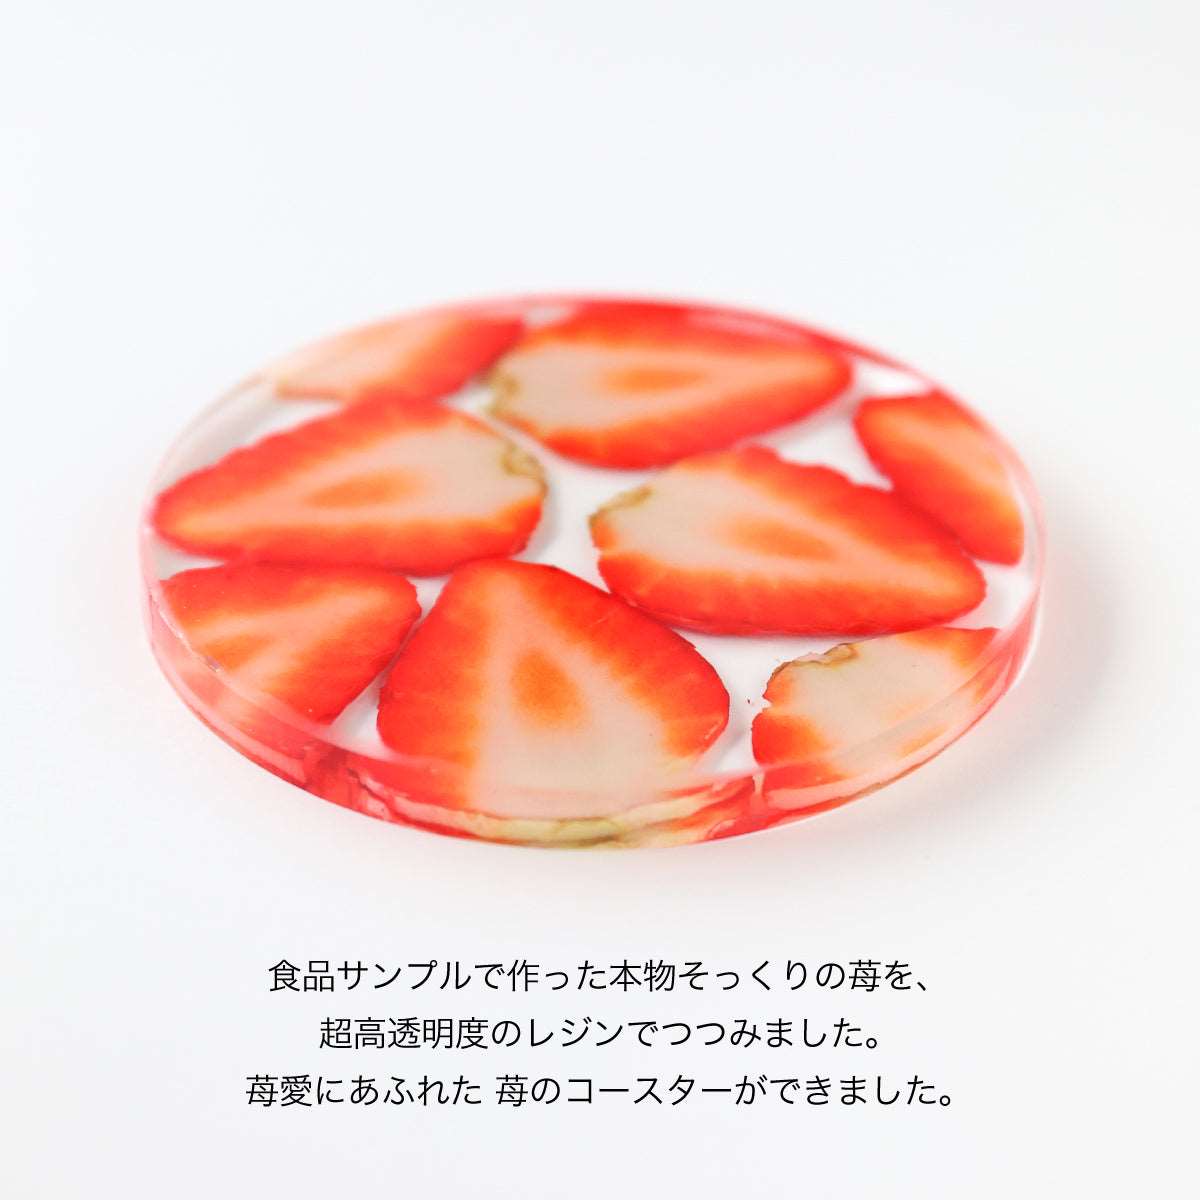 食品サンプルでできた 透明レジンコースター 苺